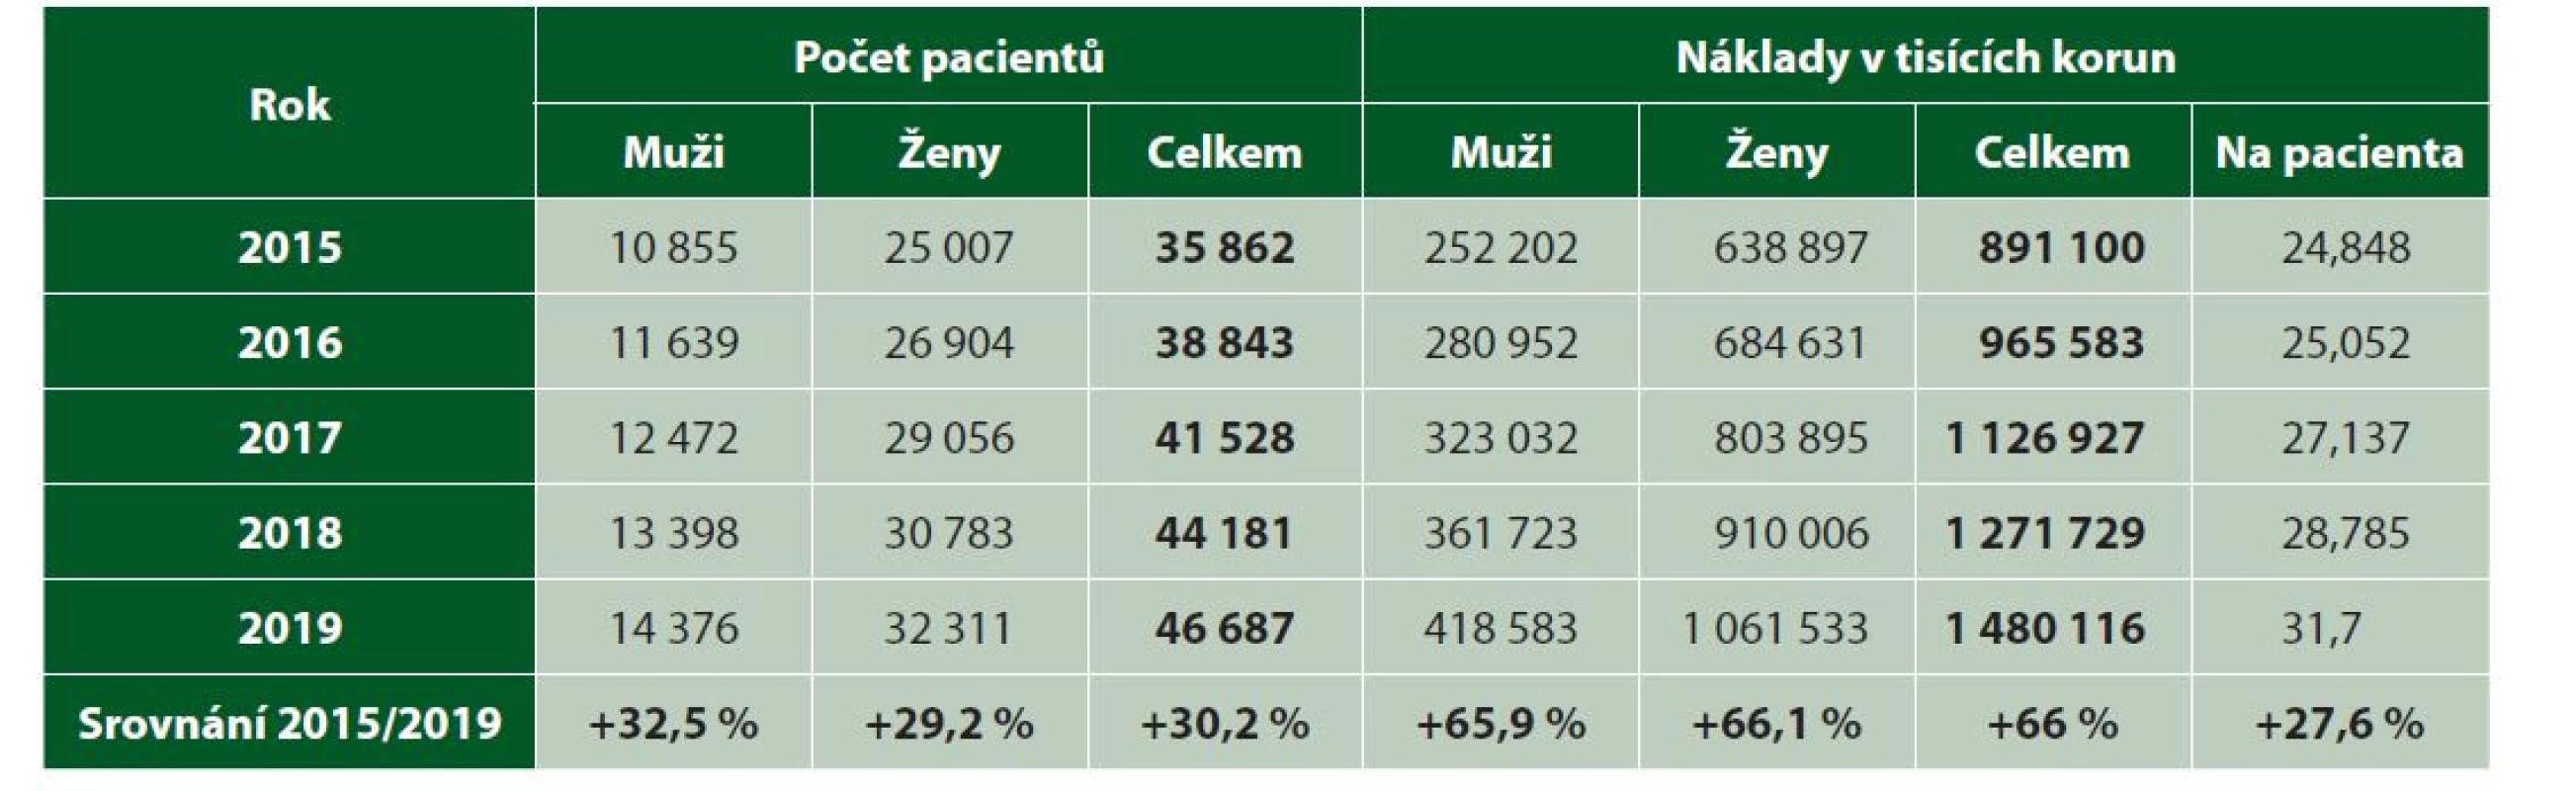 Údaje z portálu VZP týkající se růstu nákladů v souvislosti s počtem klientů s Alzheimerovou chorobou v letech
2015–2019